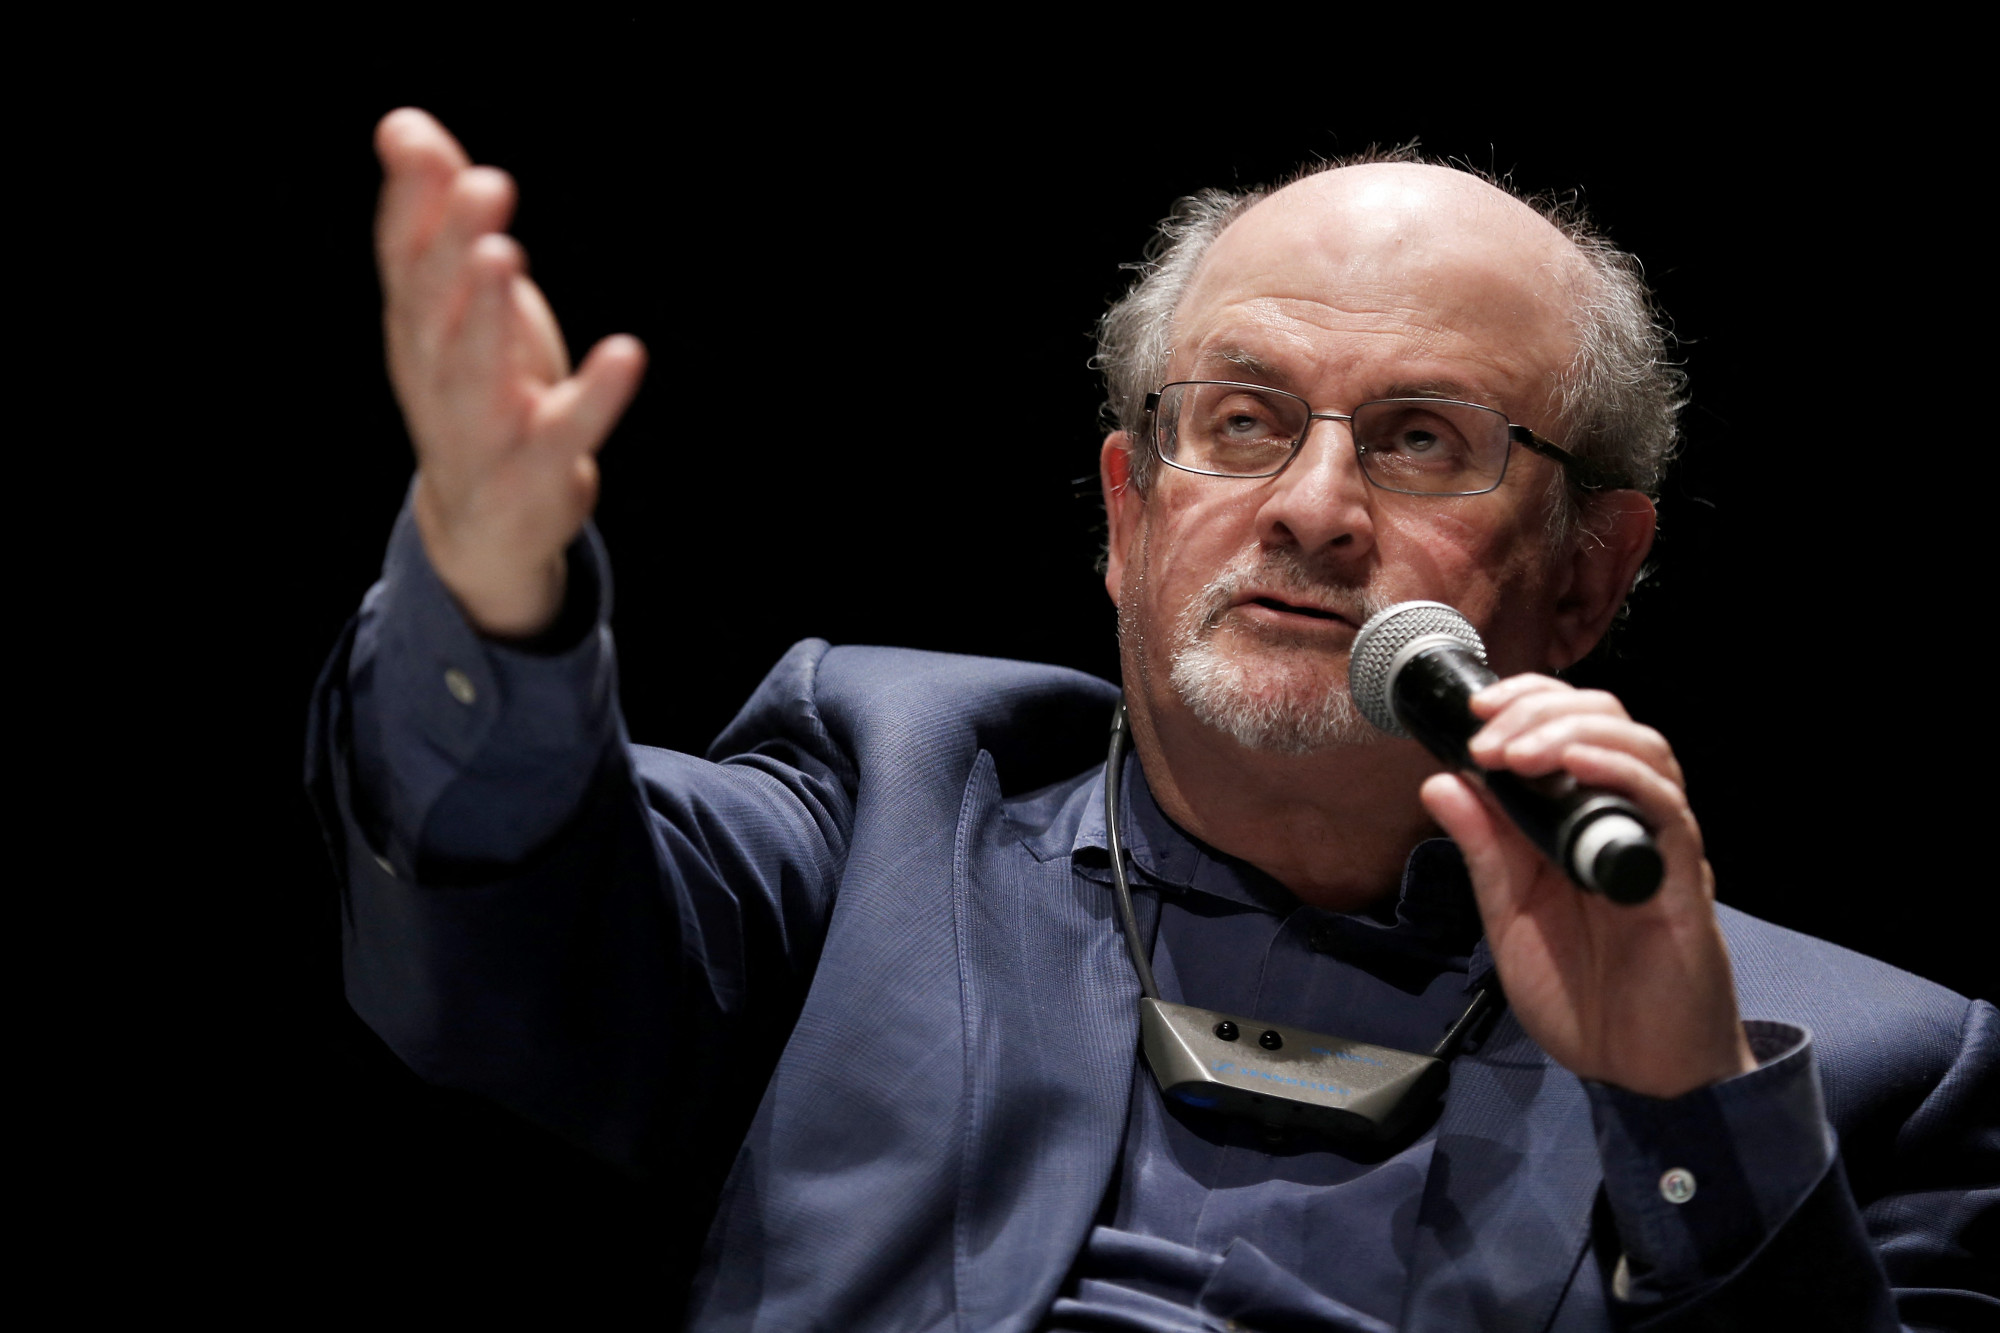 Hamarosan megjelenik Salman Rushdie új könyve, nem vesz részt a bemutatóján